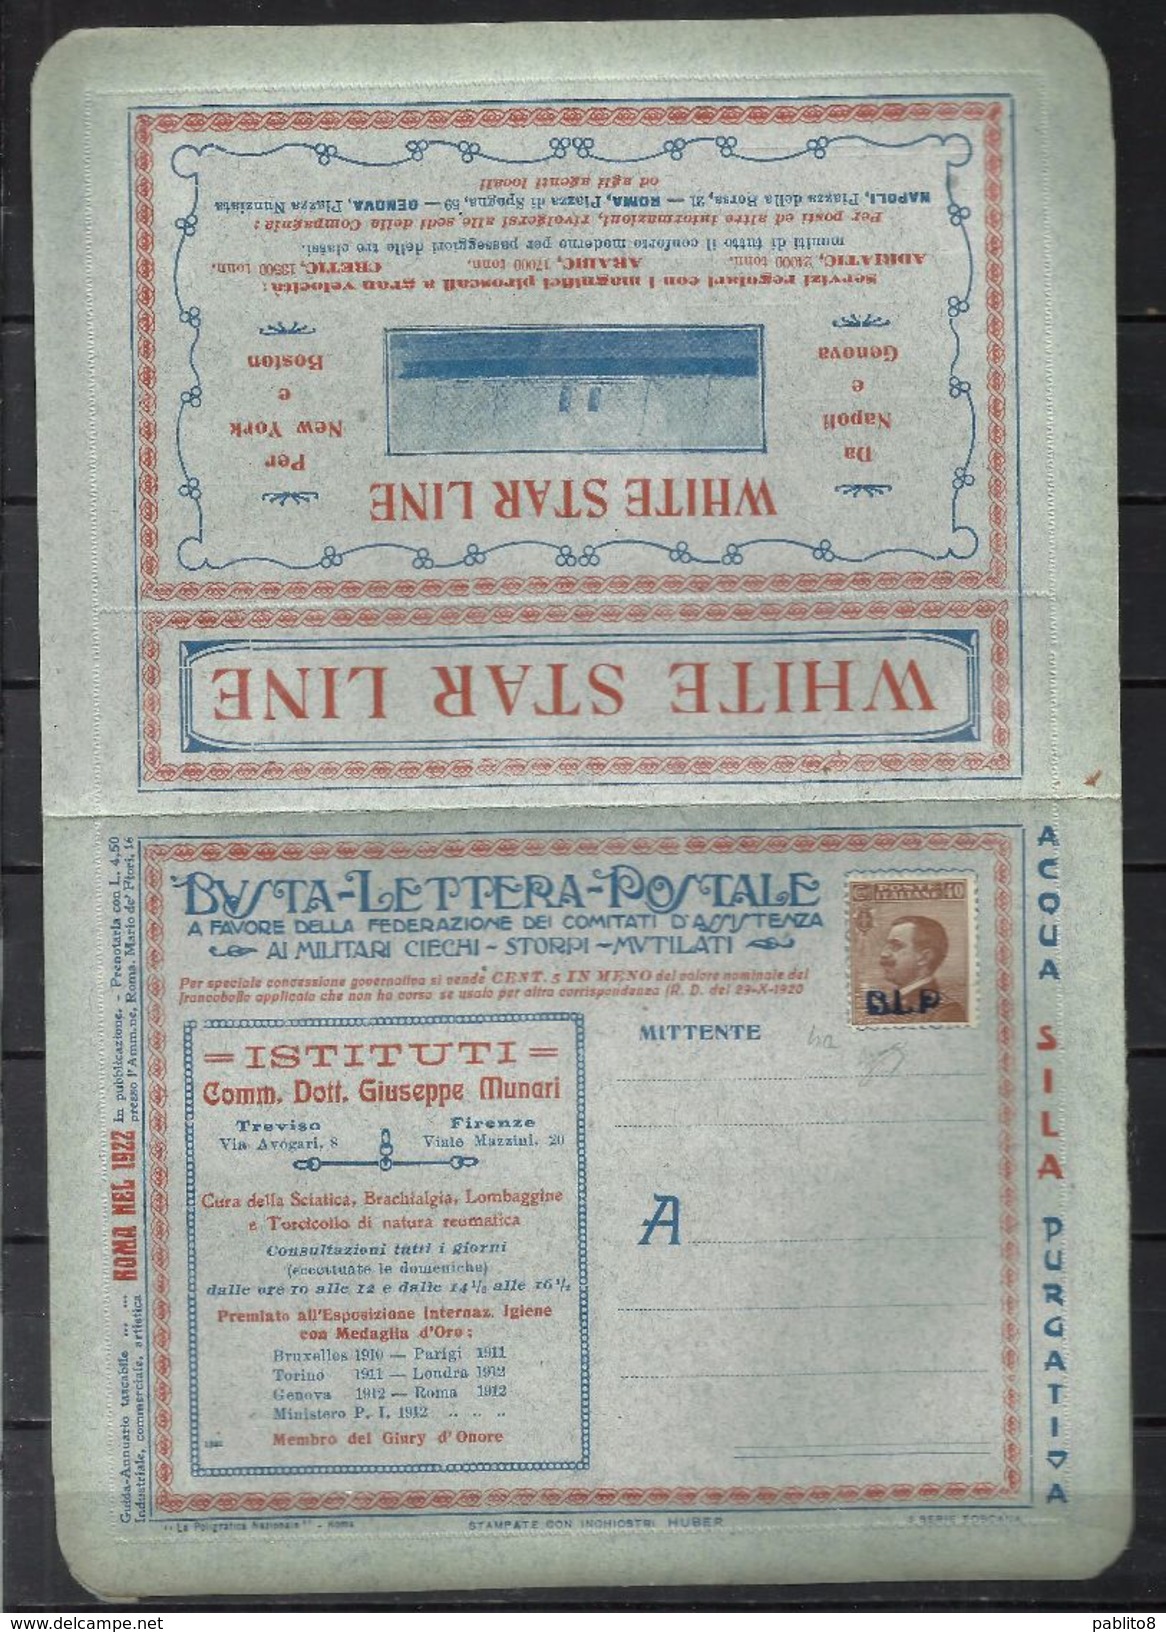 ITALY KINGDOM ITALIA REGNO 1921 BLP Busta Lettera Postale 40 Cent. Pubblicità WHITE STAR LINE NUOVA FIRMATA SIGNED - Stamps For Advertising Covers (BLP)